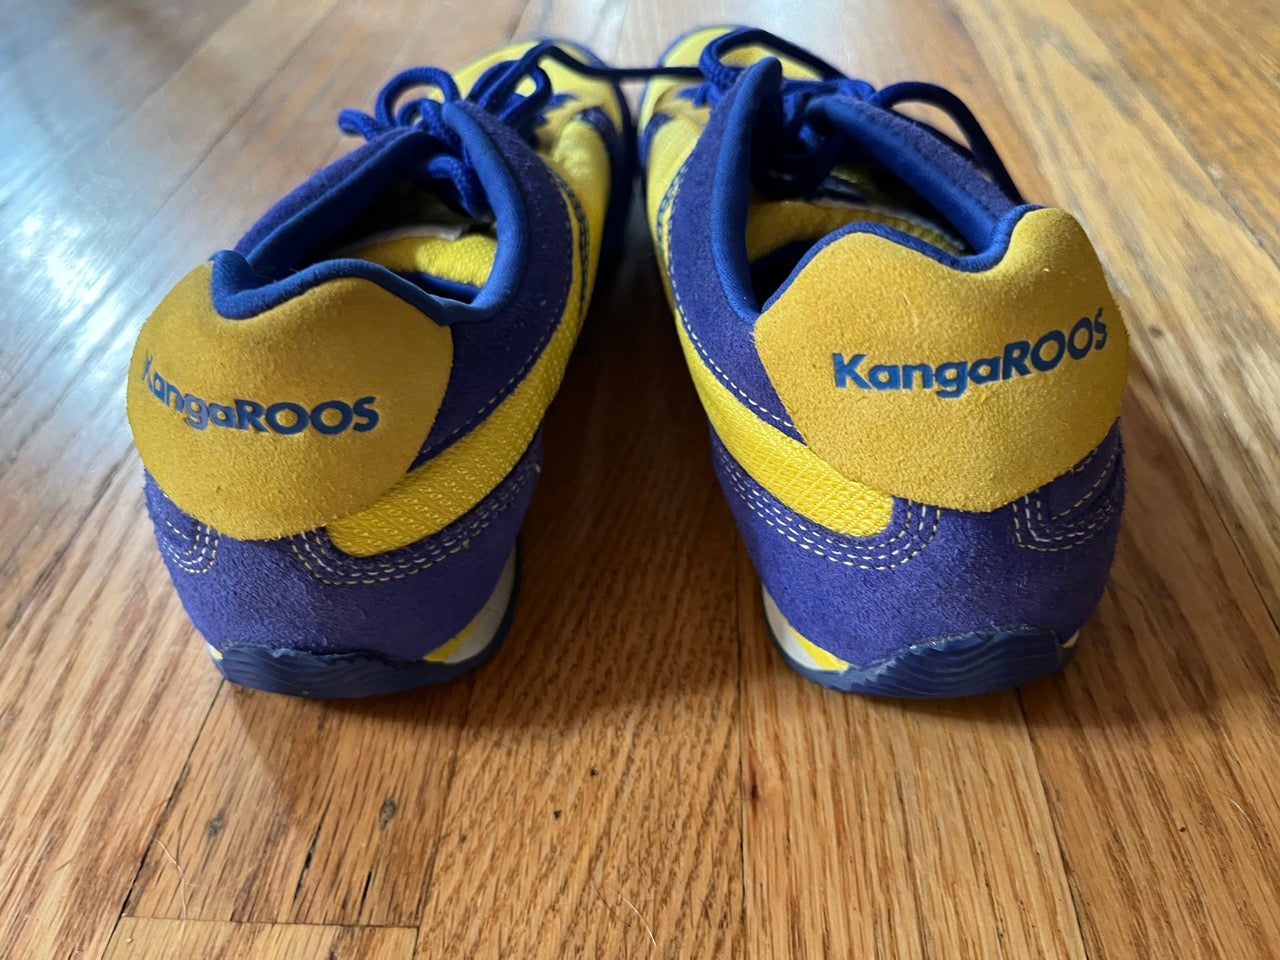 KangaRoos Shoes for Men